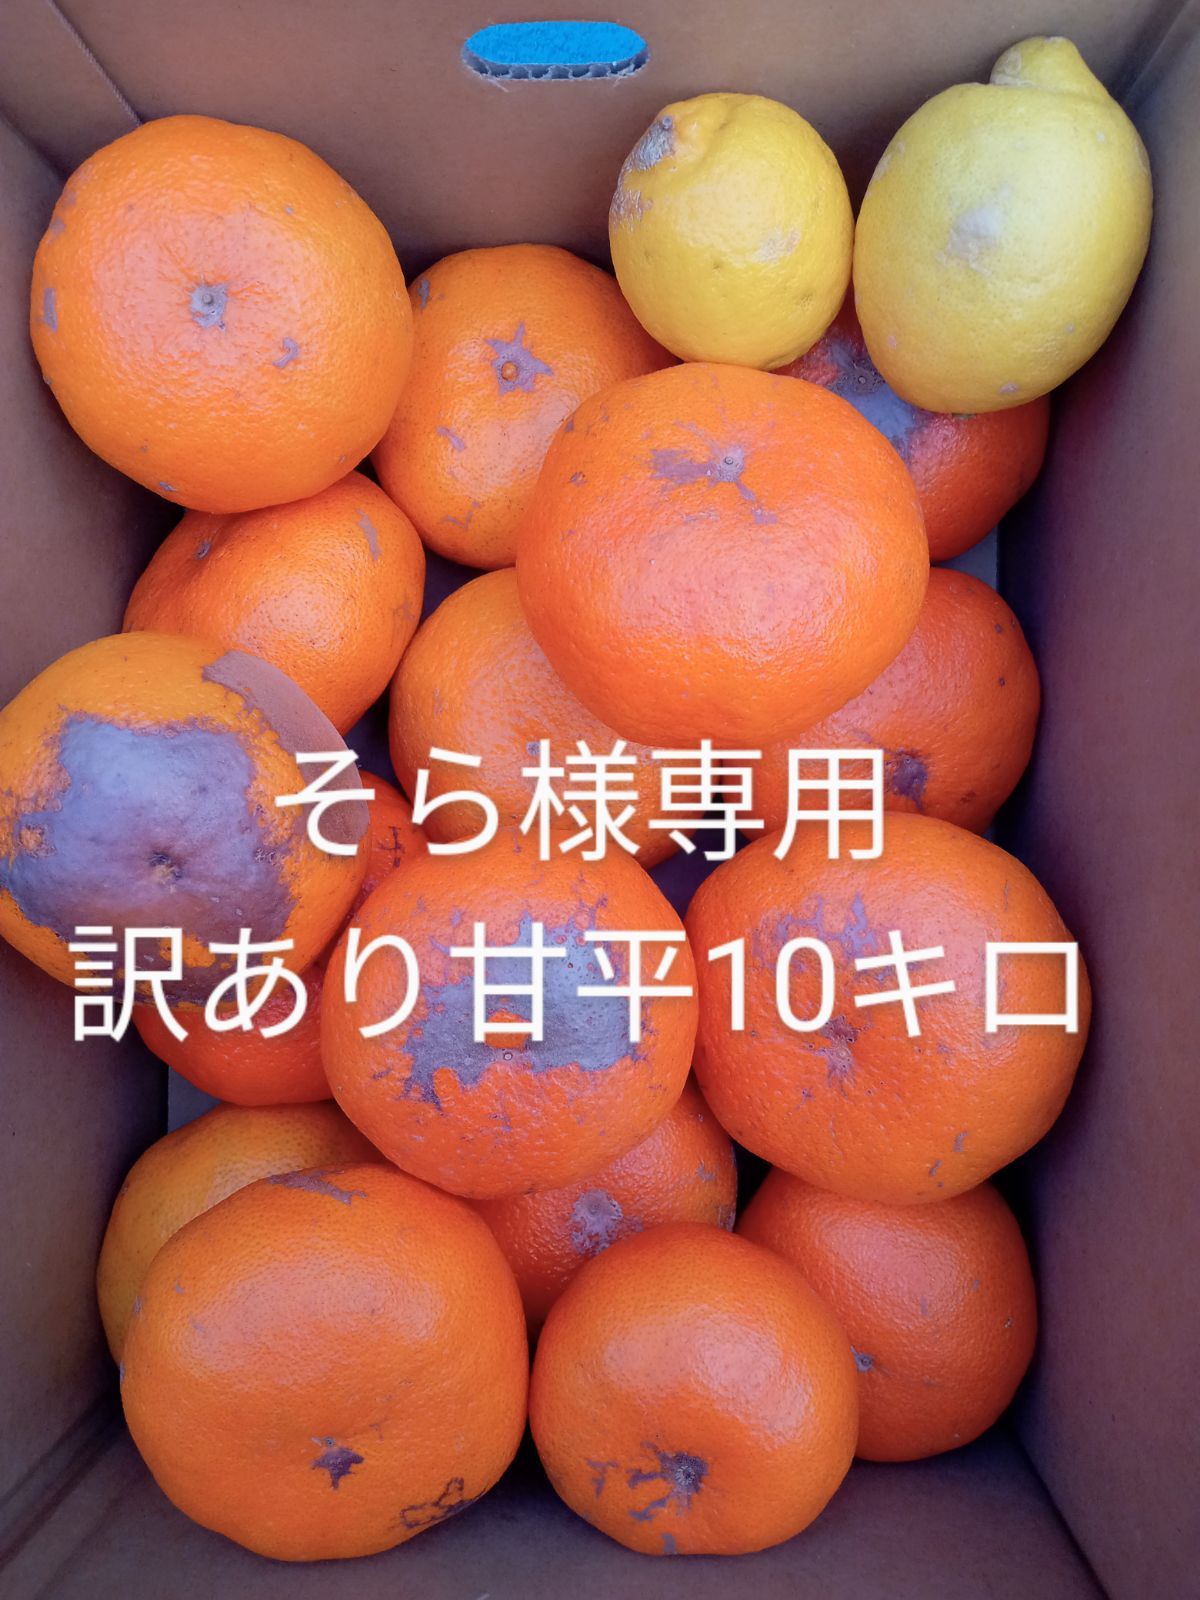 そら様専用 訳あり甘平10キロ - megu柑橘えひめ - メルカリ